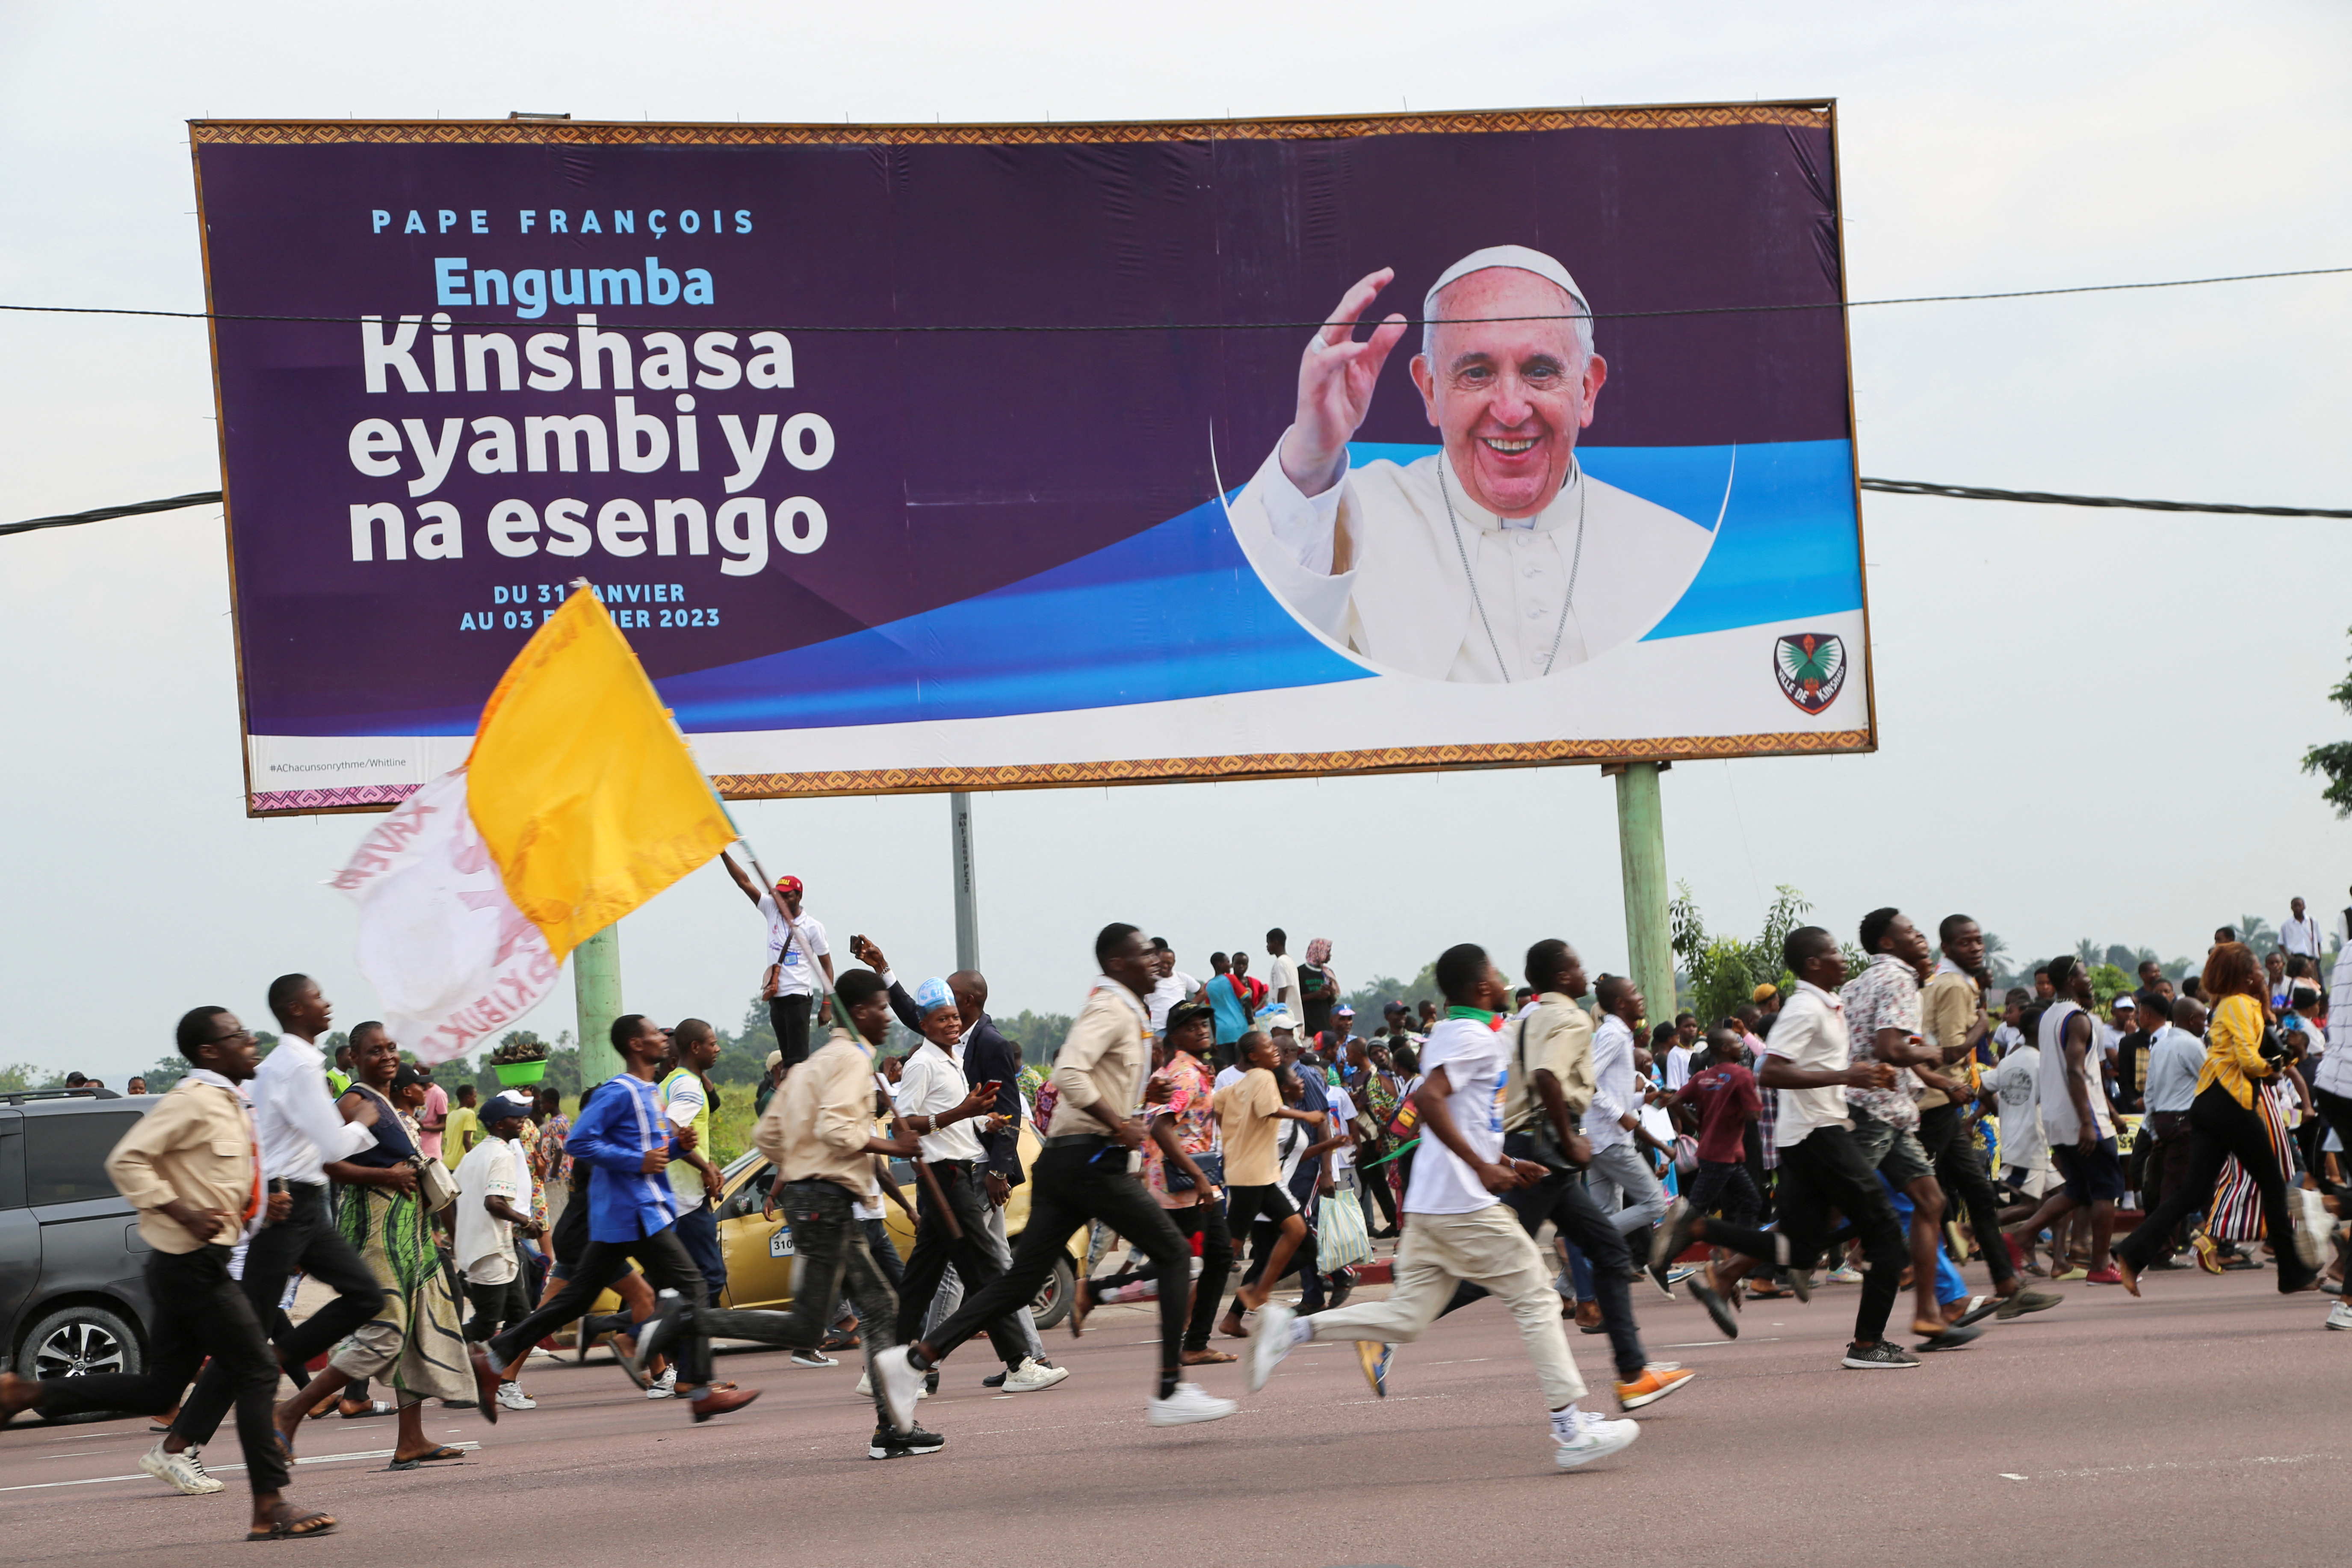 Una multitud animando corre tras el convoy del papa Francisco, a su llegada para su viaje apostólico, en Kinshasa, República Democrática del Congo, 31 de enero de 2023. REUTERS/Justin Makangara